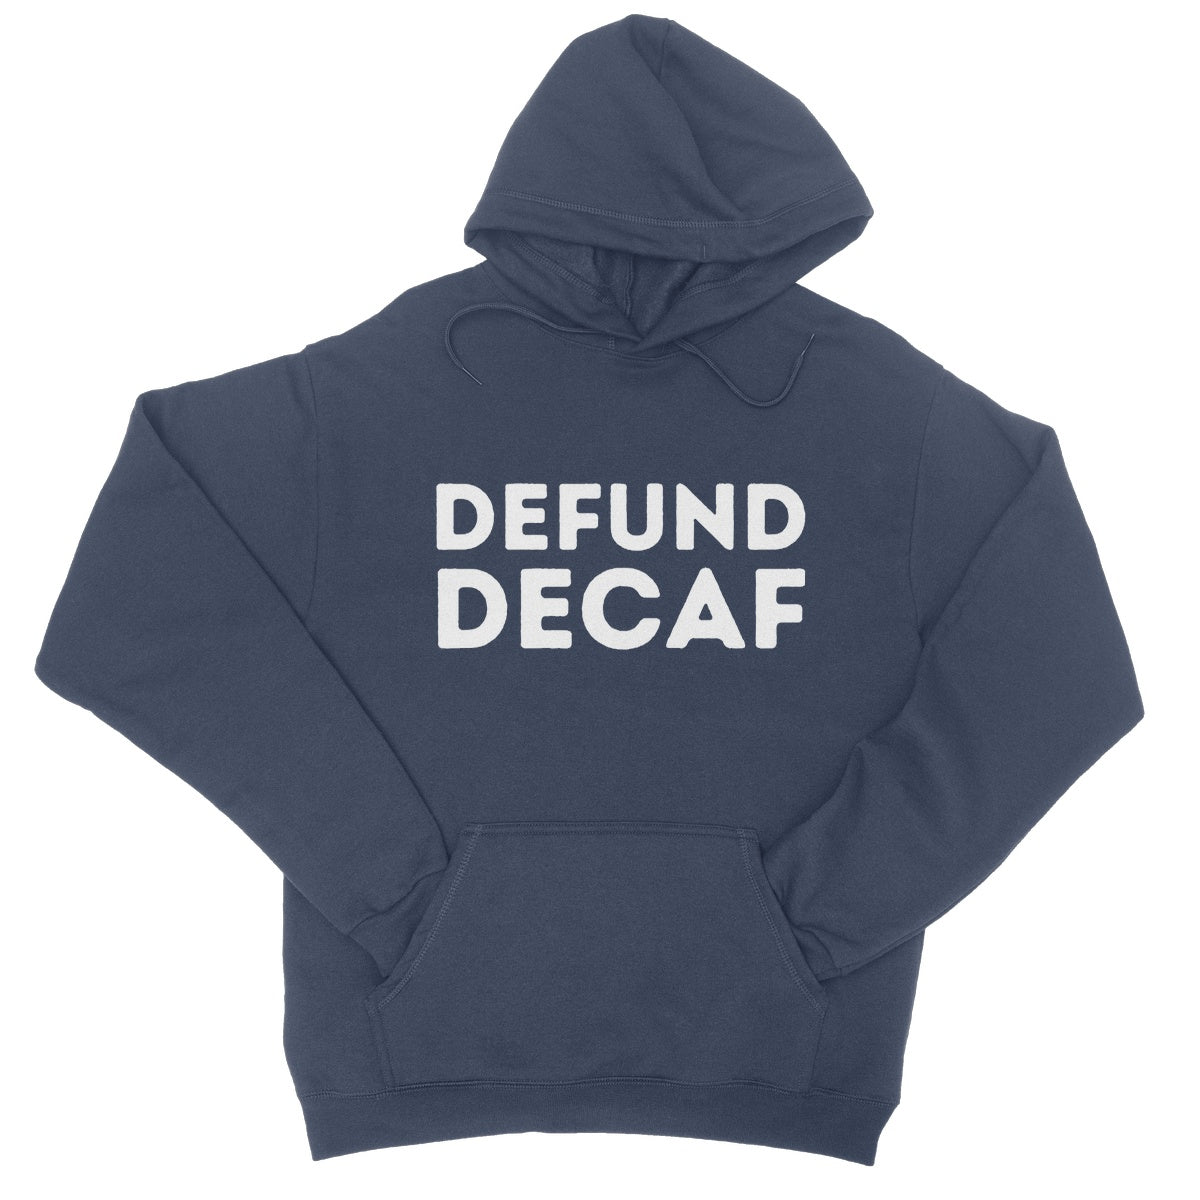 defund decaf hoodie navy